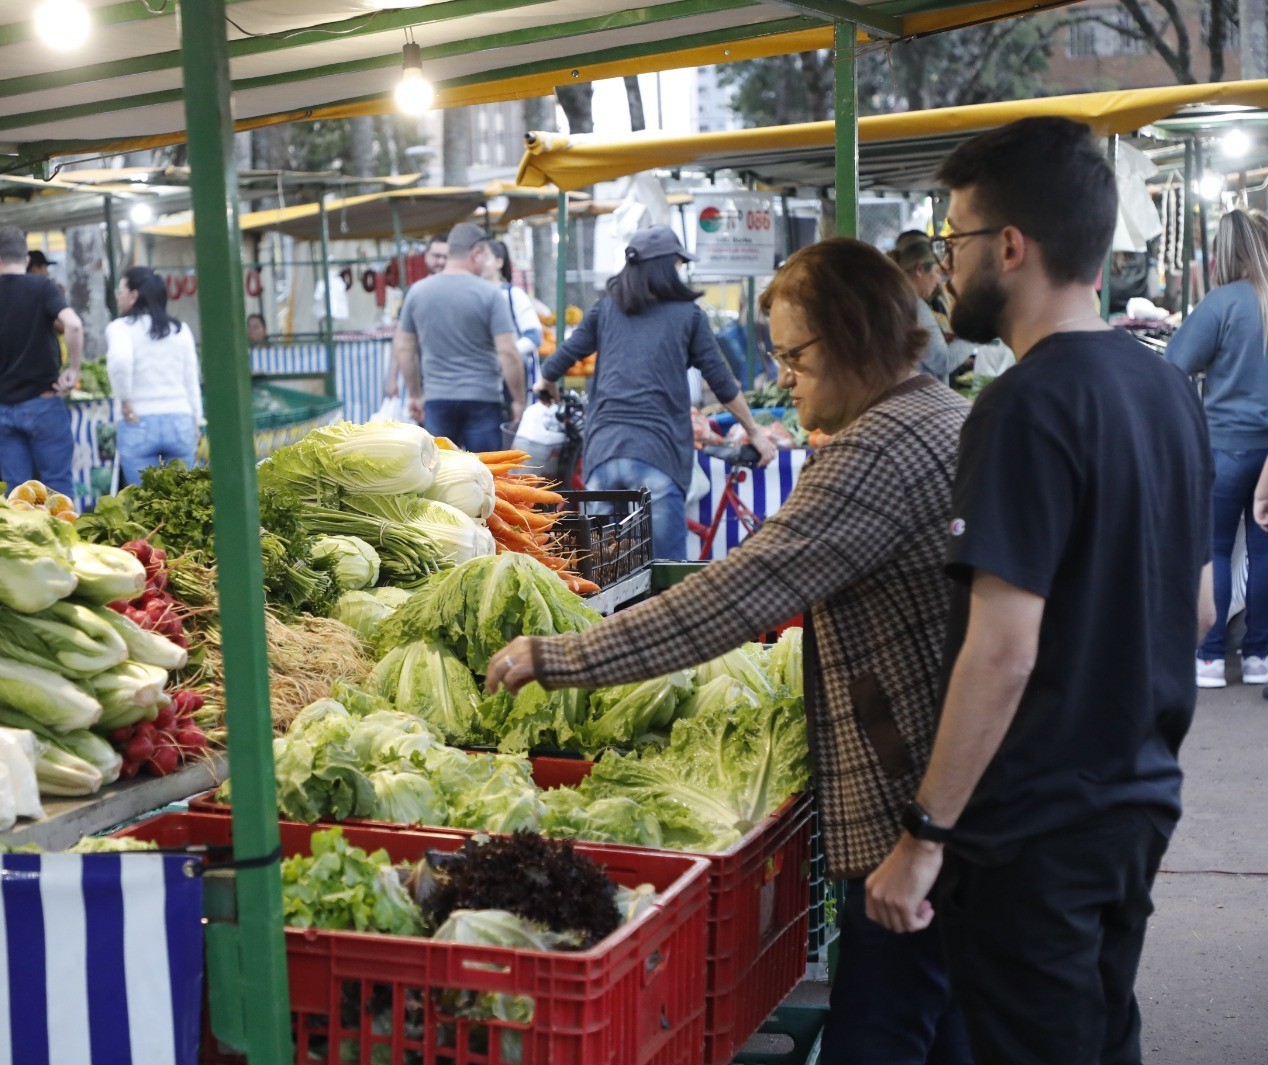 Clima e inflação pressionam preços de frutas, legumes e verduras em Cascavel